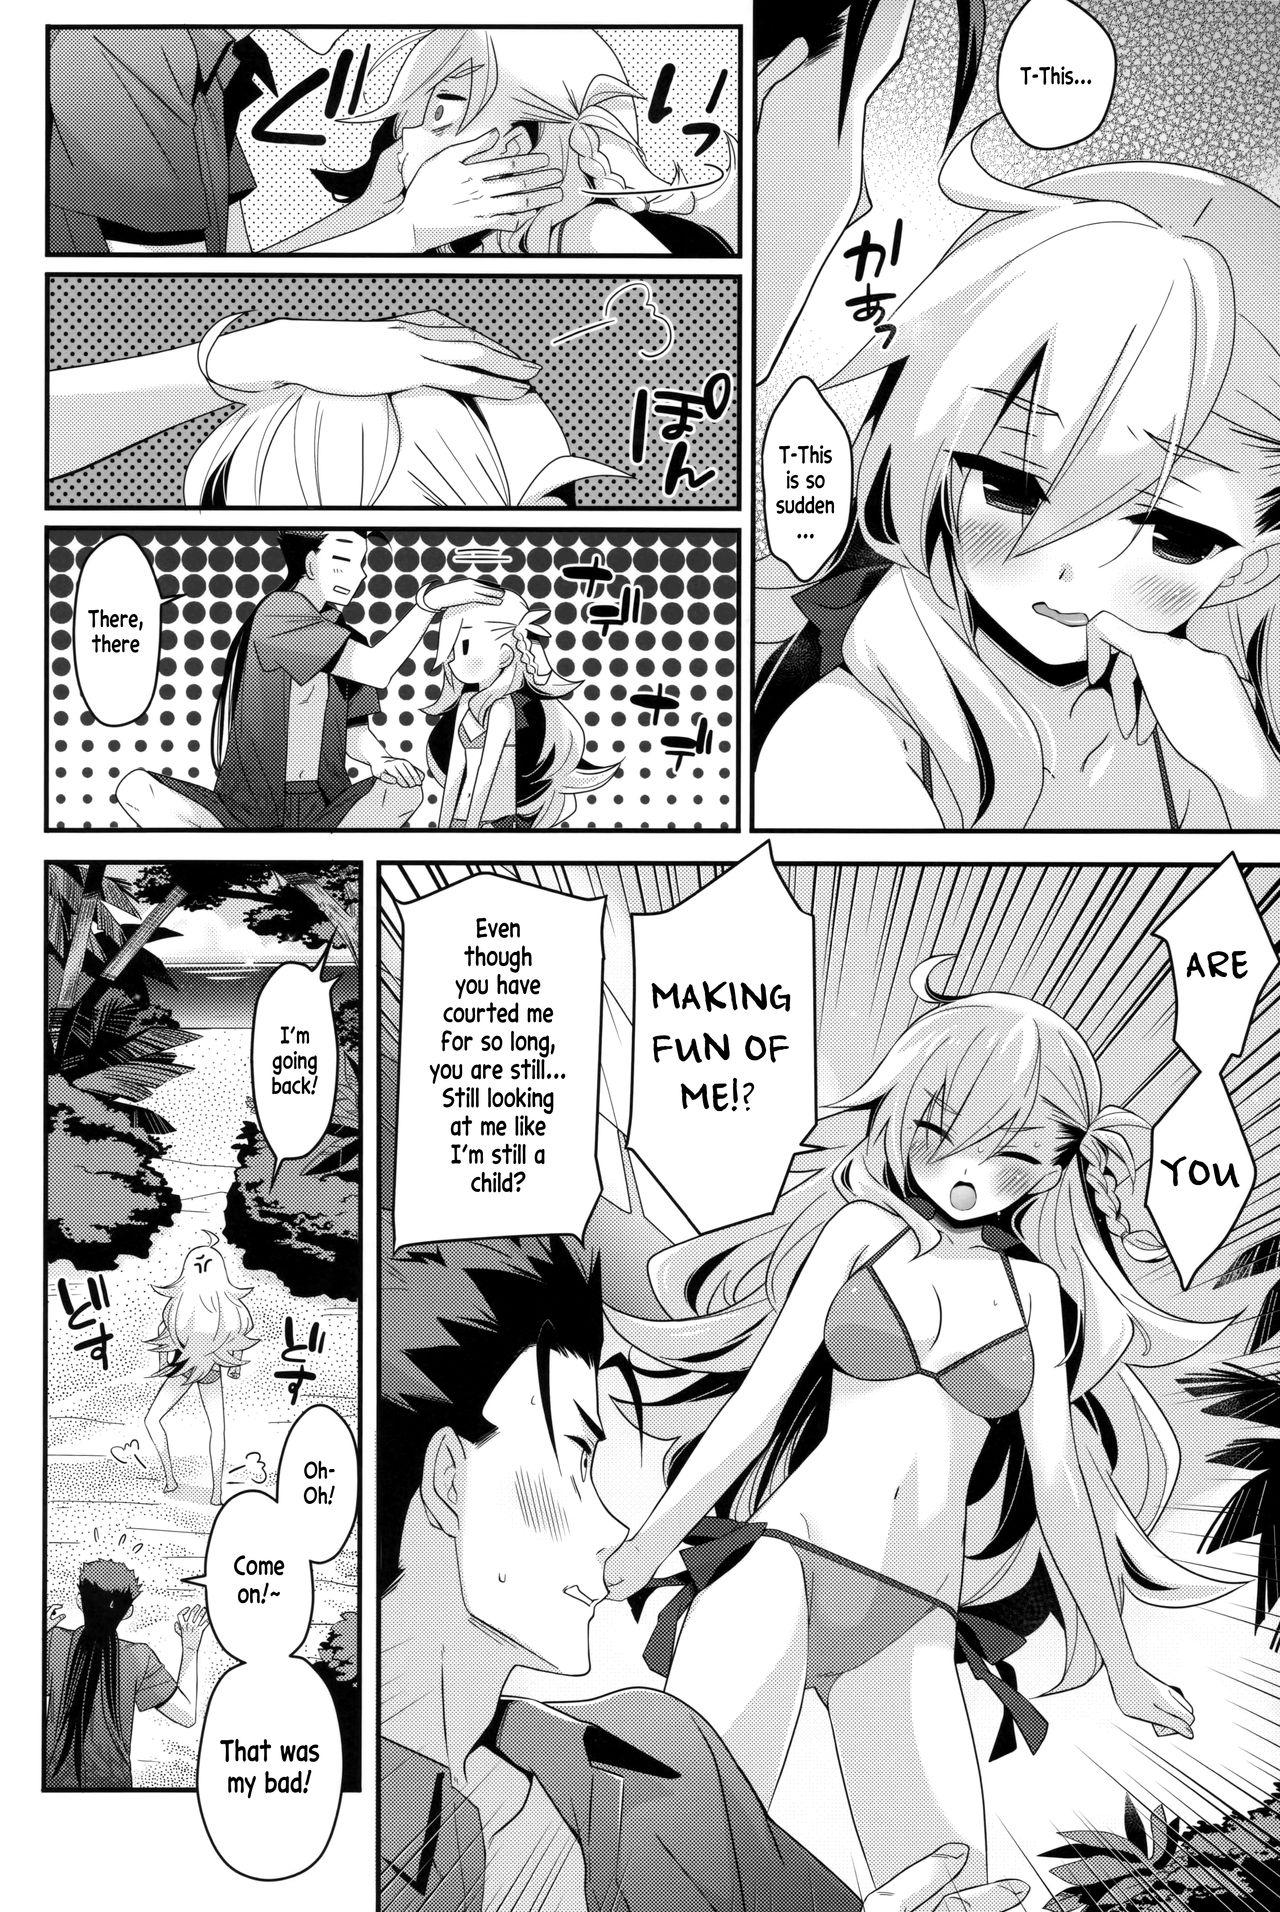 Making Love Porn Uchi no Chaldea ni wa Olga Marie Shochou ga Iru. - Fate grand order Nuru Massage - Page 7